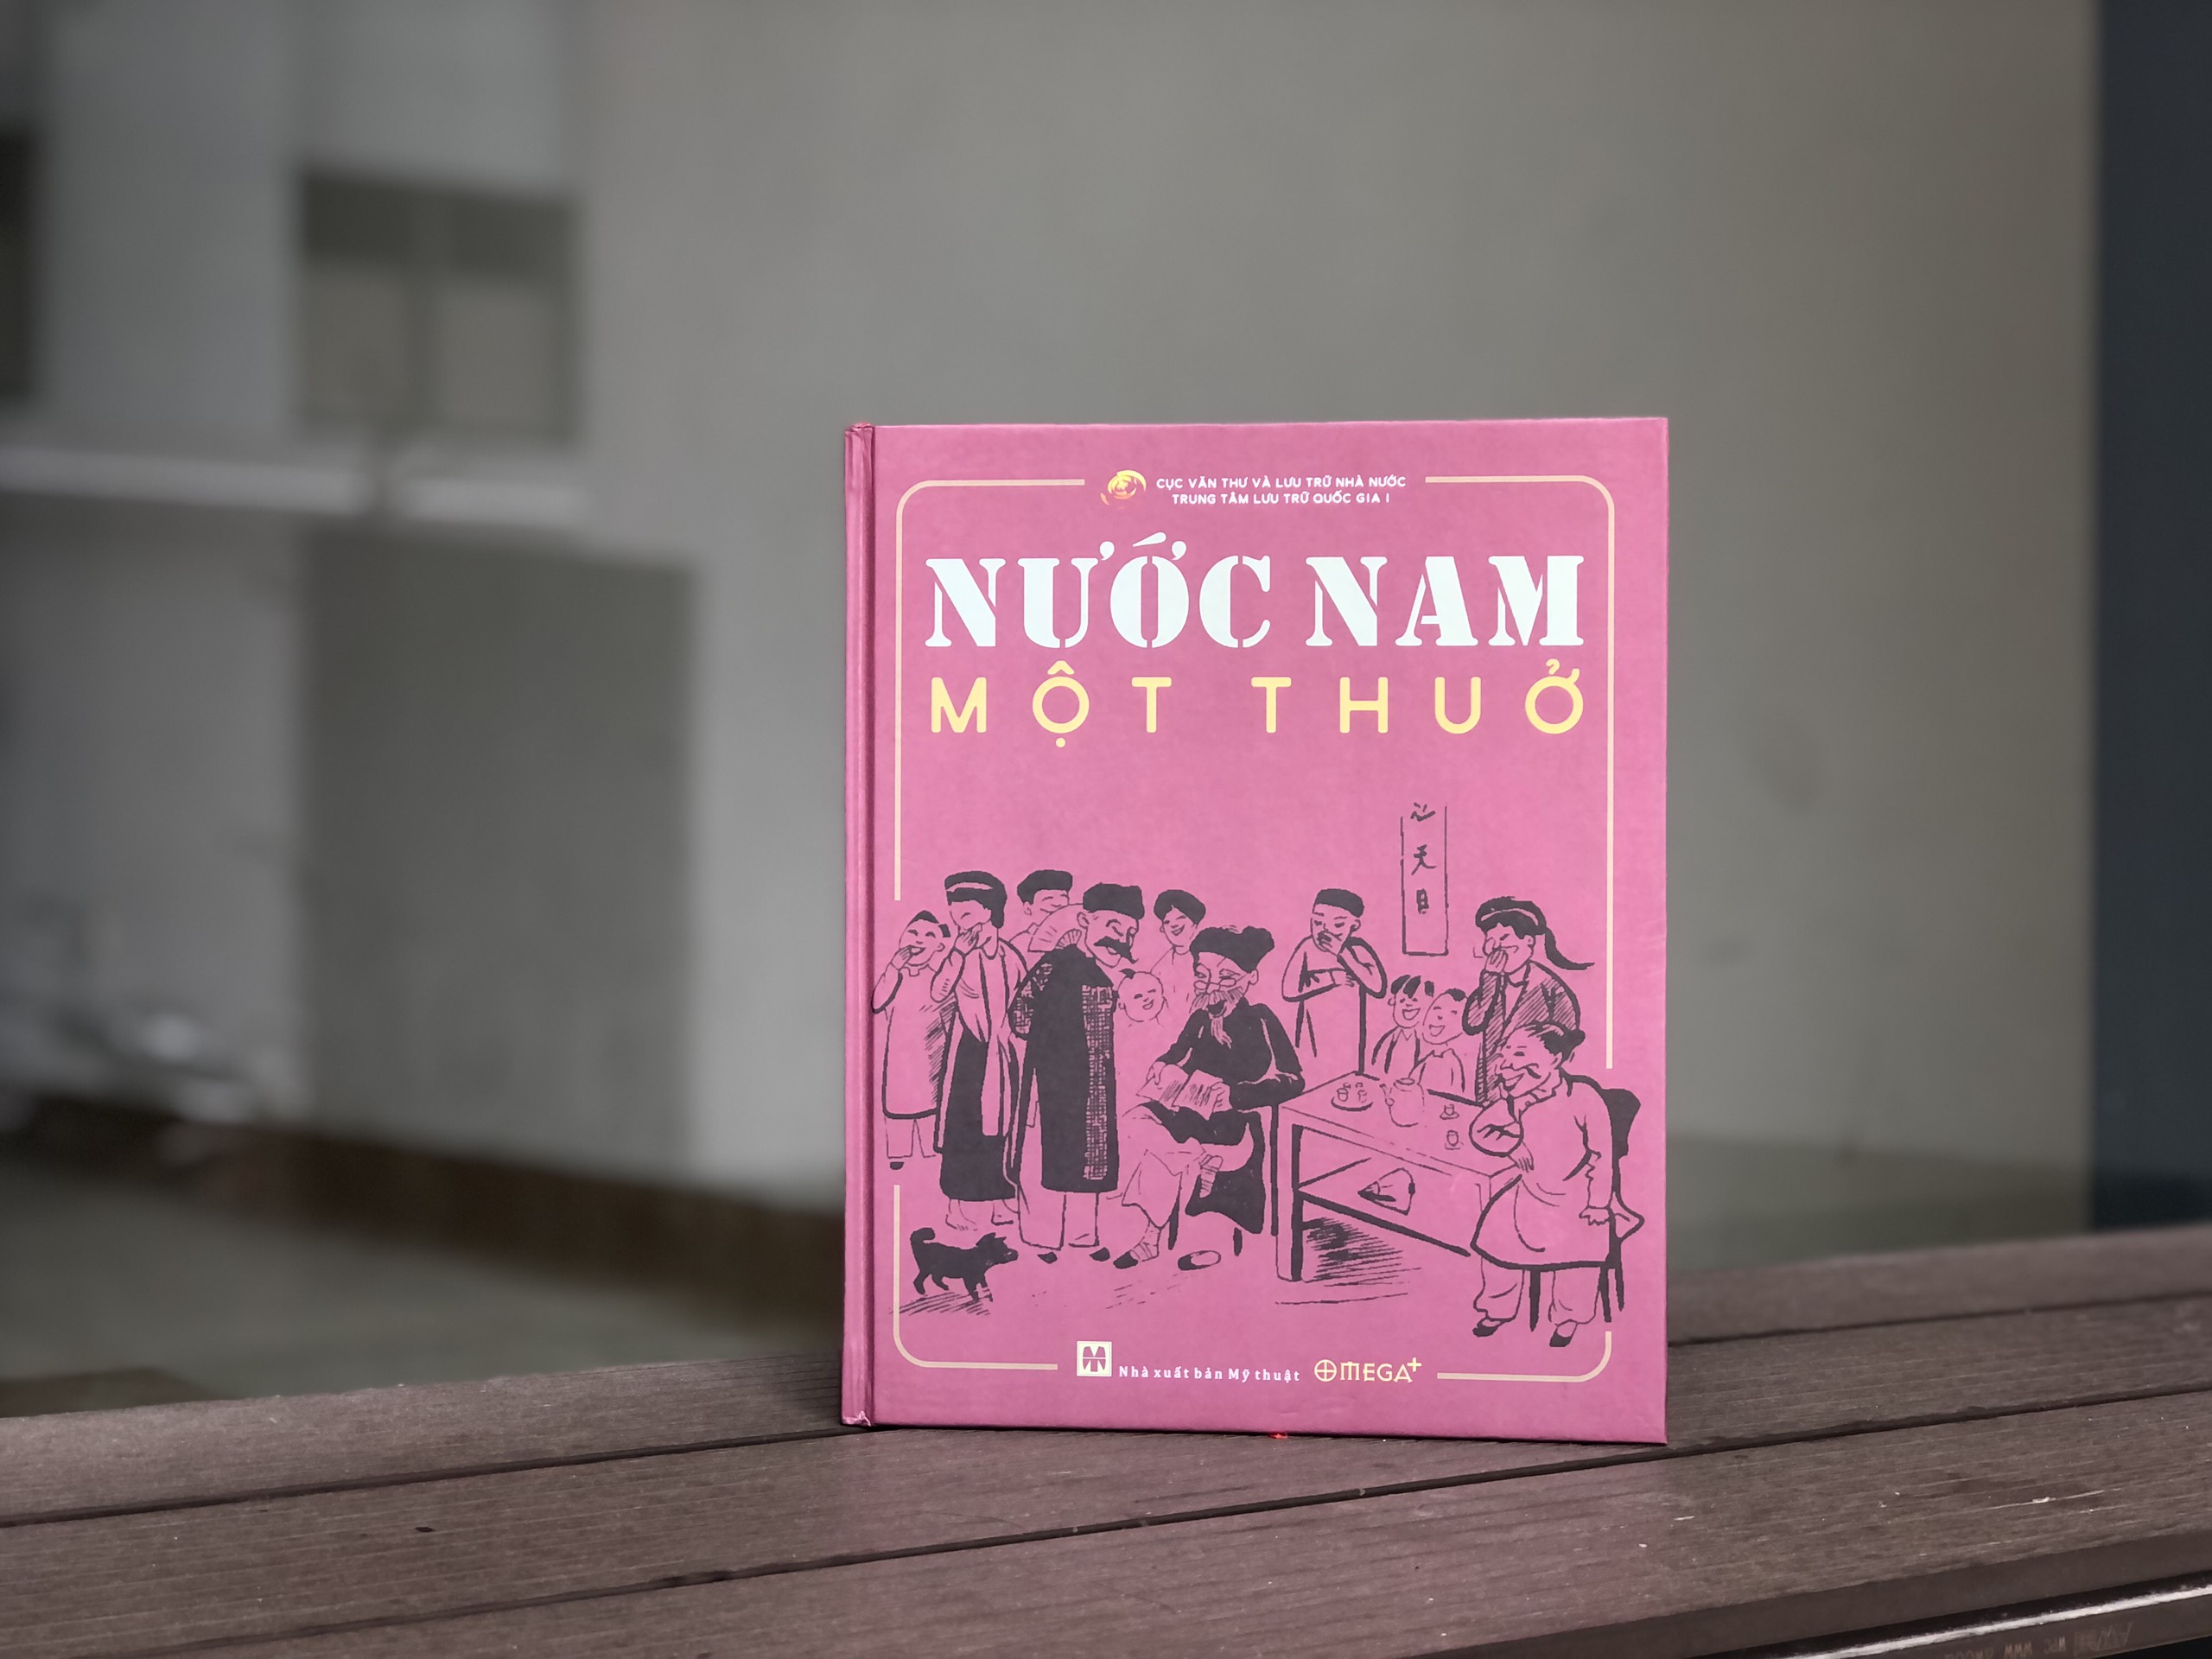 Những lát cắt về lịch sử - văn hóa Việt xưa qua “Nước Nam một thuở” - 1